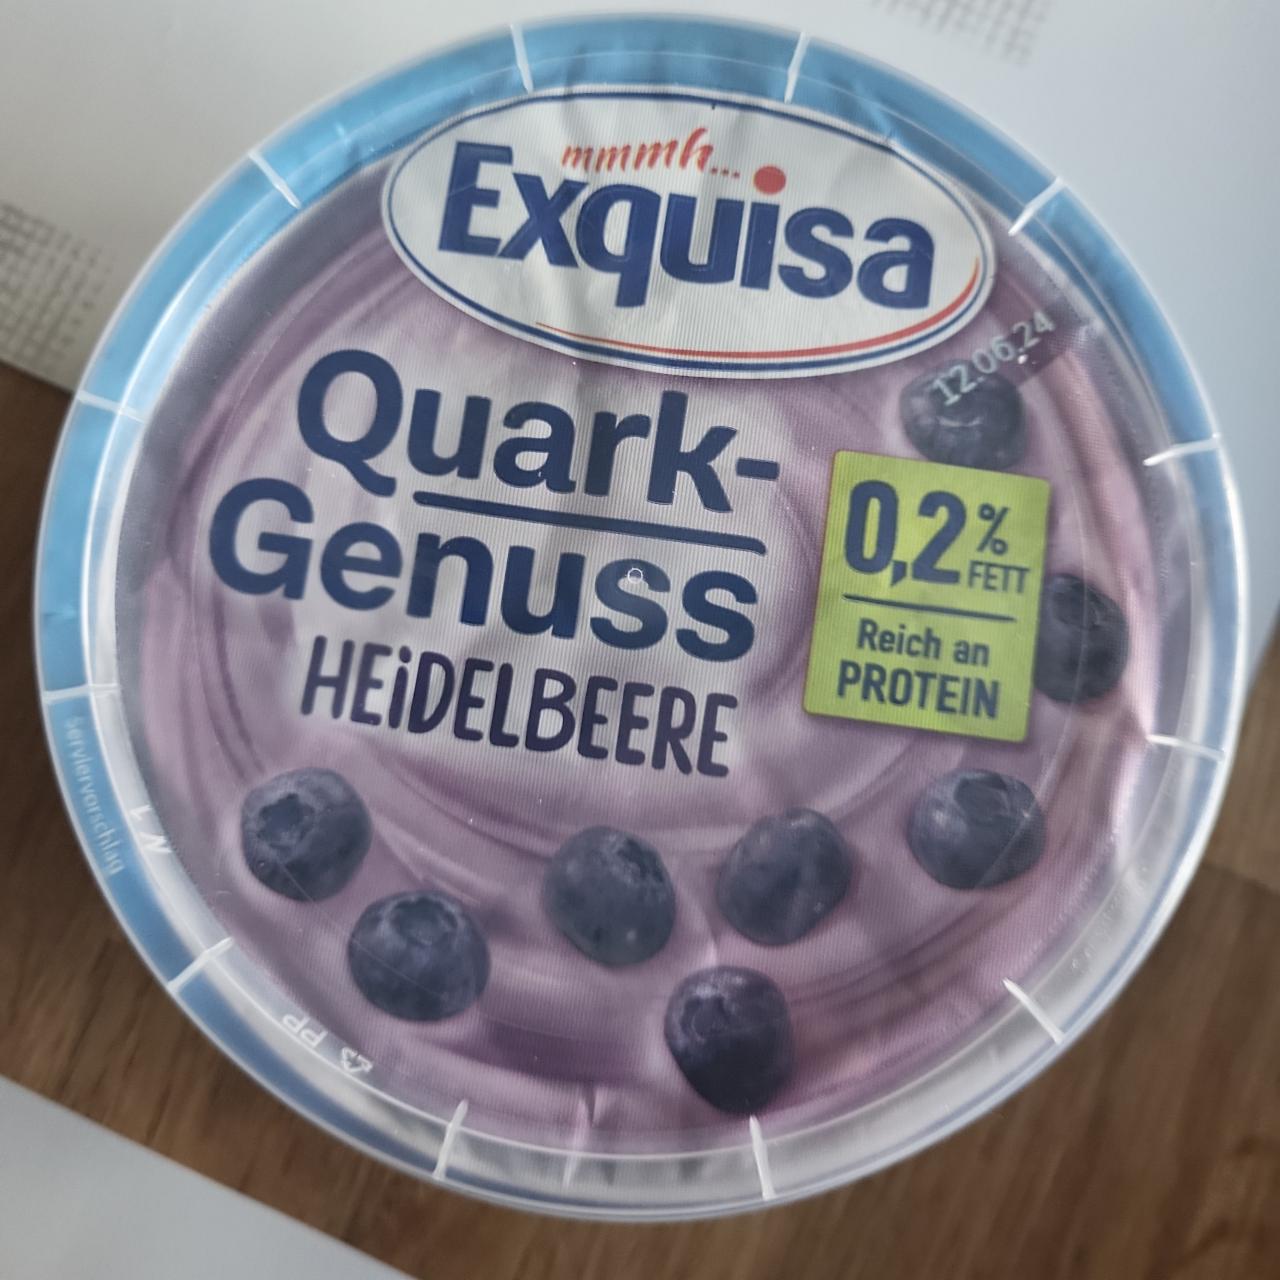 Fotografie - Quark genuss heidelbeere Exquisa